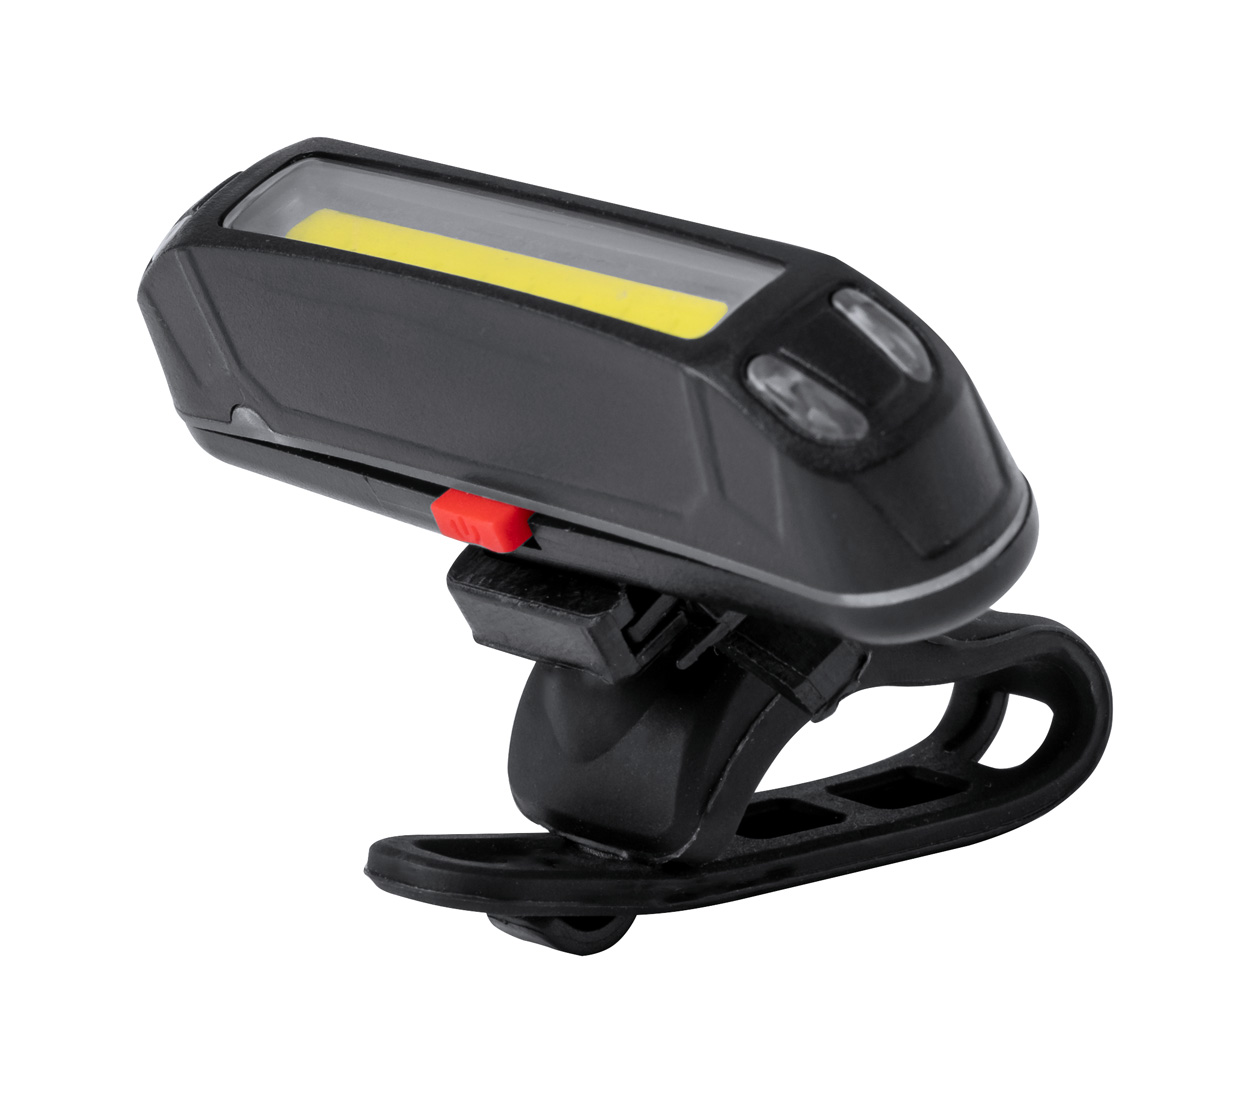 Havu set of rechargeable bike lights - schwarz